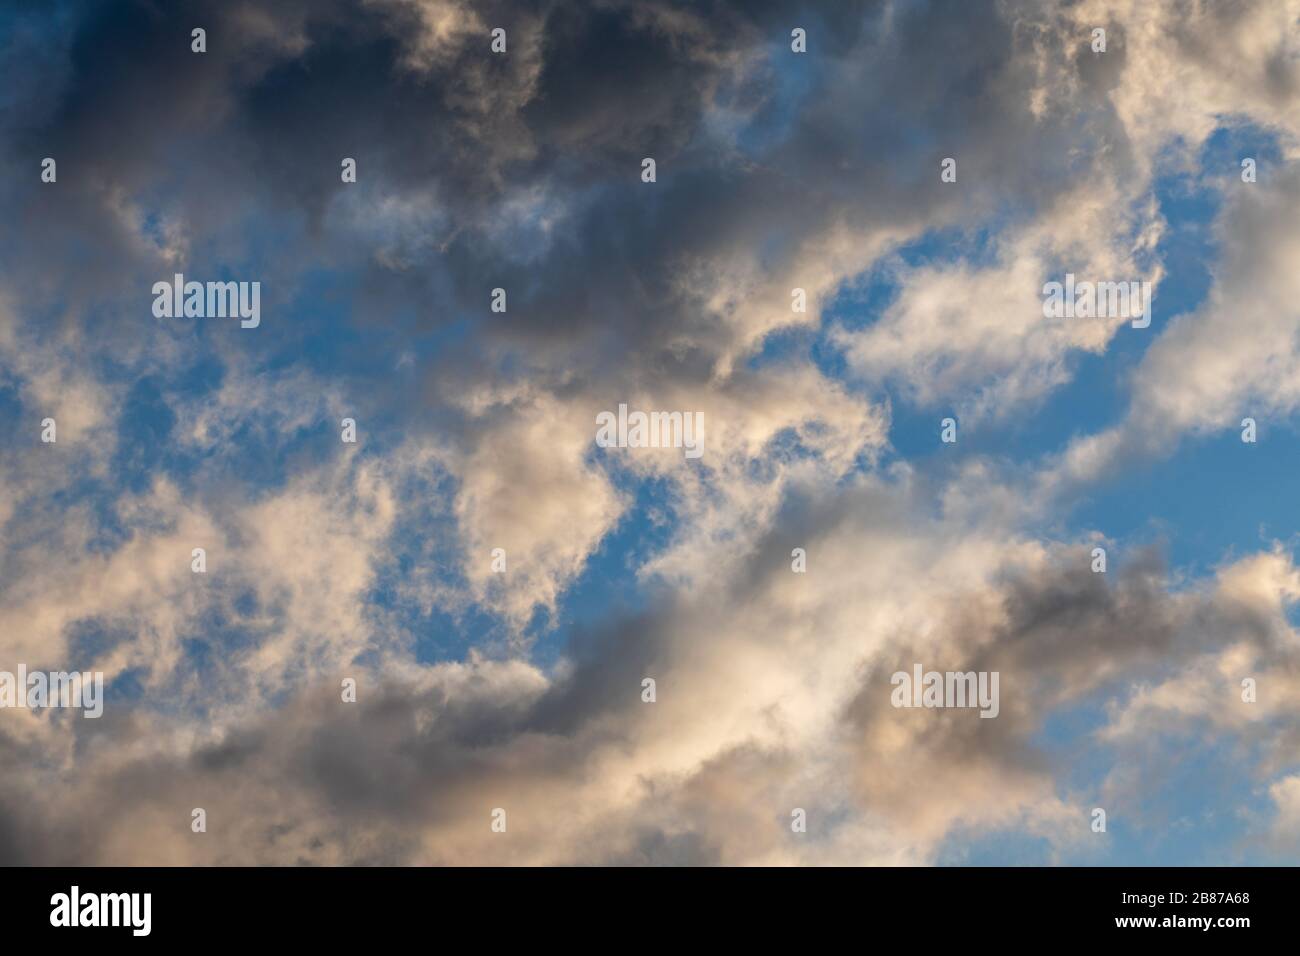 Dramatische Himmelswolken zeigen Texturhintergrund an. Sonnenuntergang hoch malerisch bewölkt blau Blick auf den Himmel Stockfoto